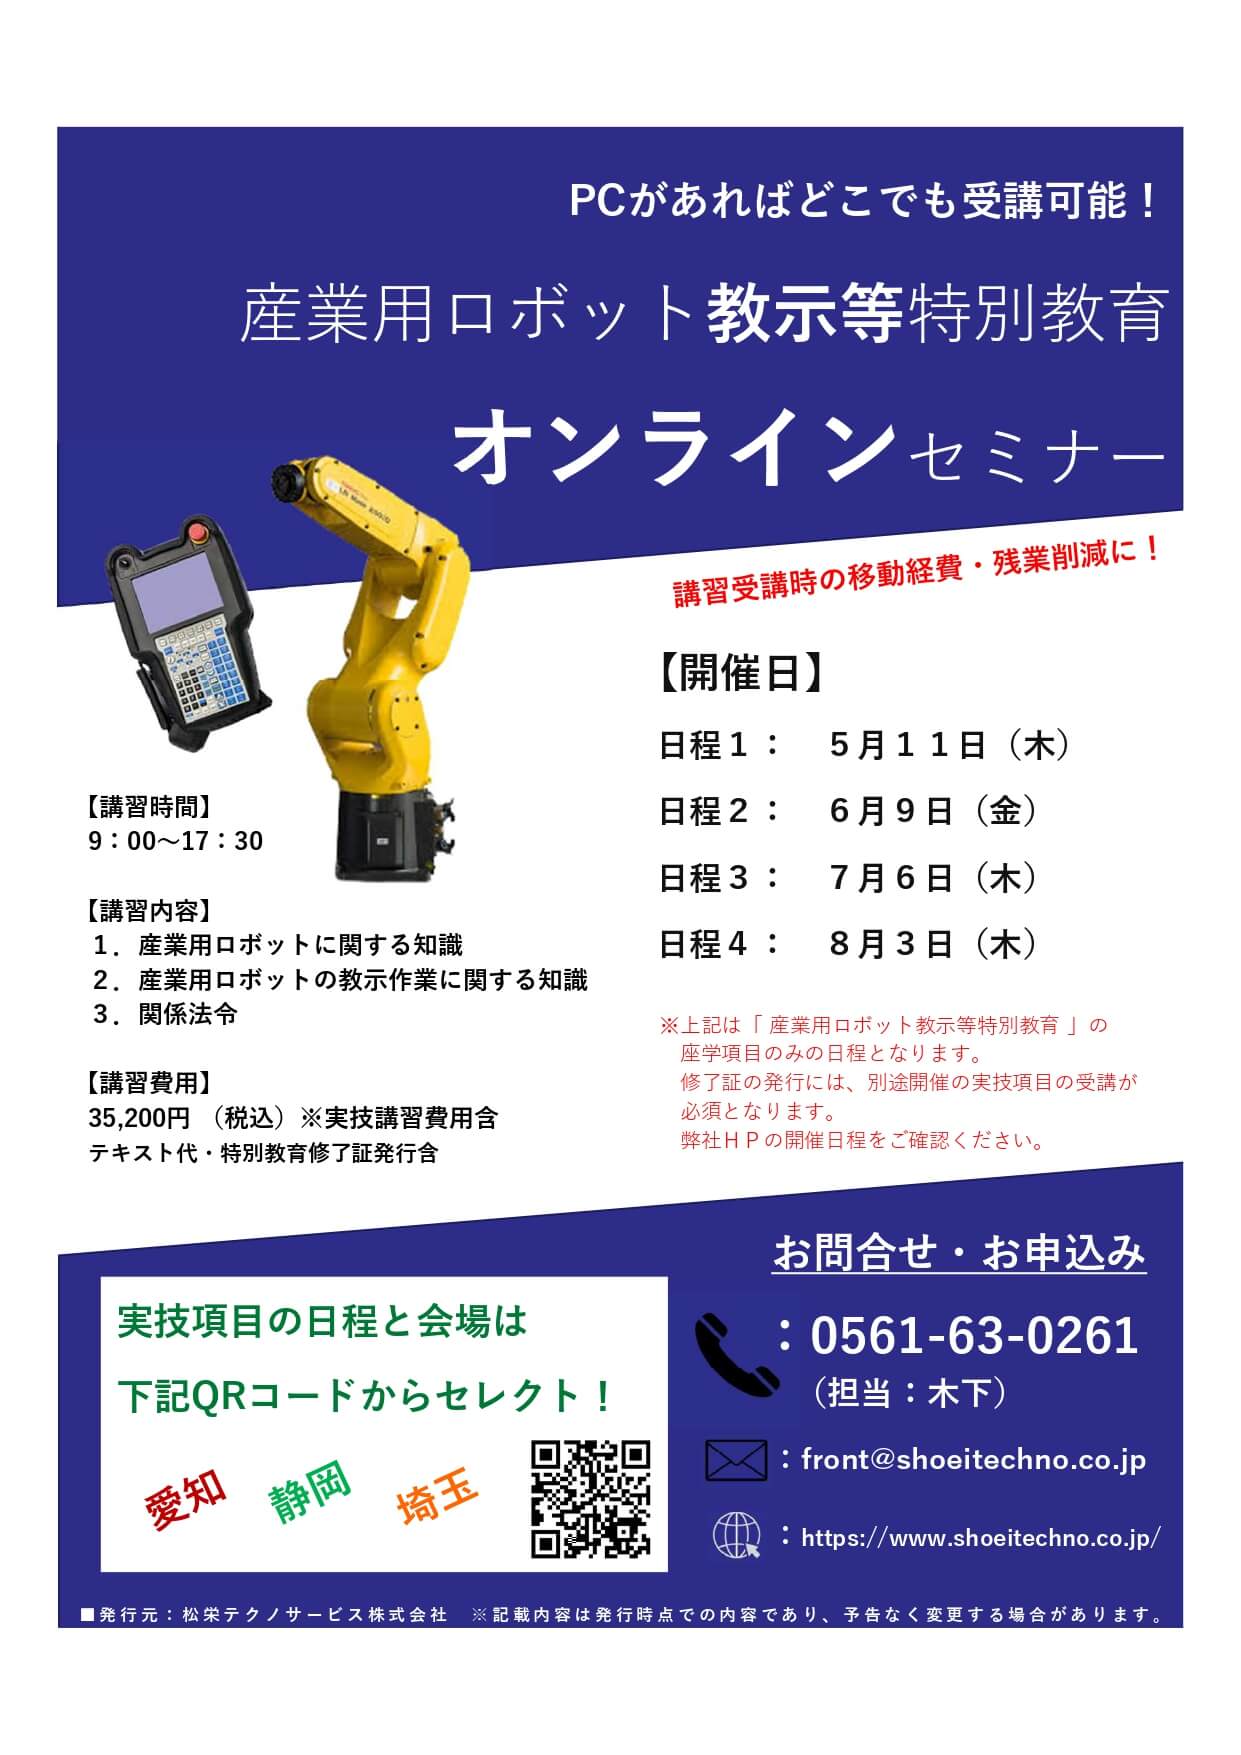 【オンライン】産業用ロボット 教示等 特別教育 オンラインセミナー開催のお知らせ